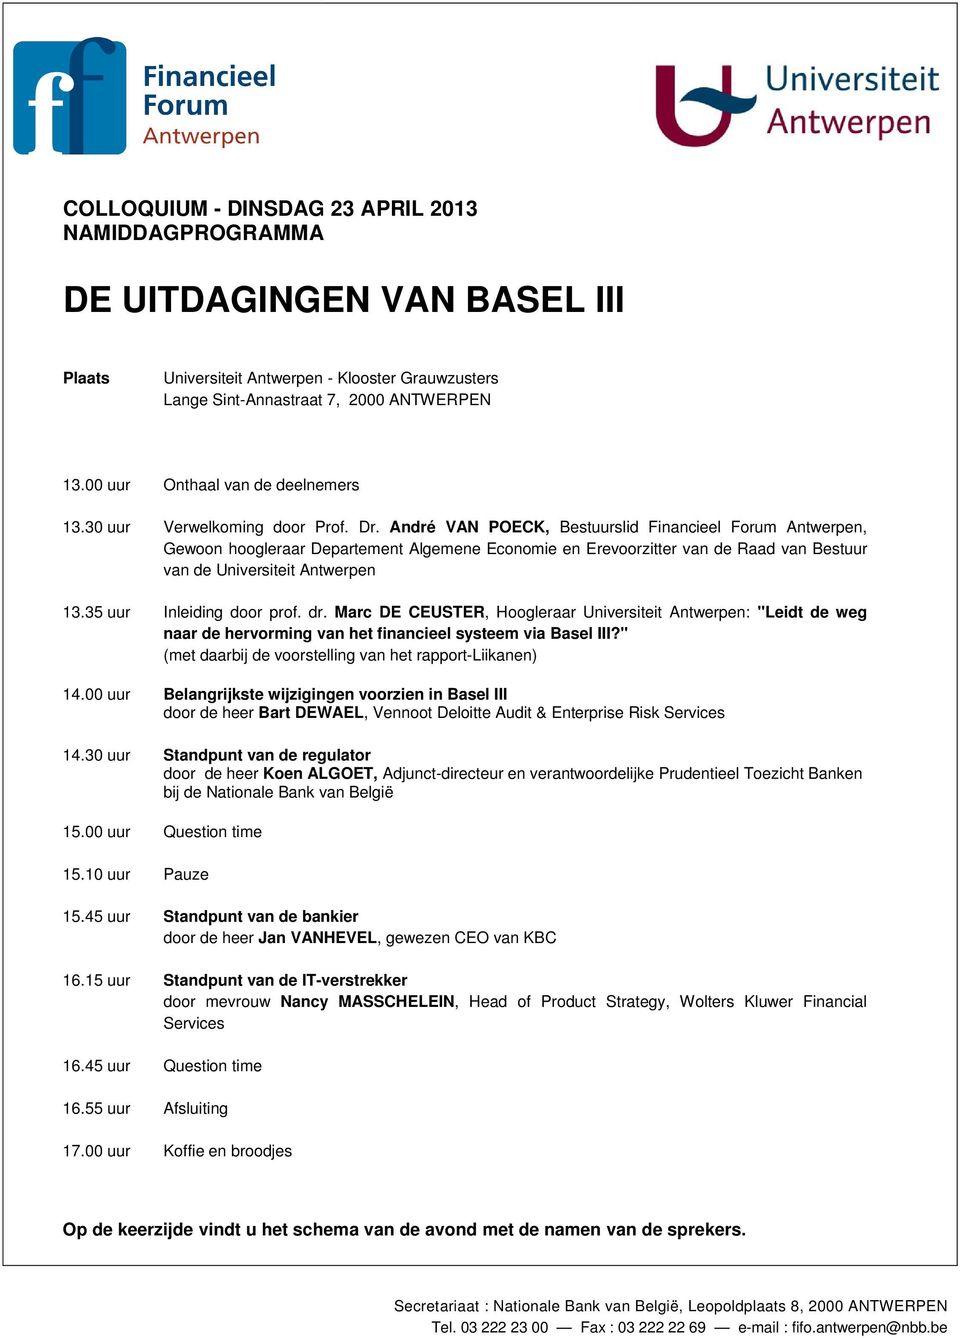 35 uur Inleiding door prof. dr. Marc DE CEUSTER, Hoogleraar Universiteit Antwerpen: "Leidt de weg naar de hervorming van het financieel systeem via Basel III?